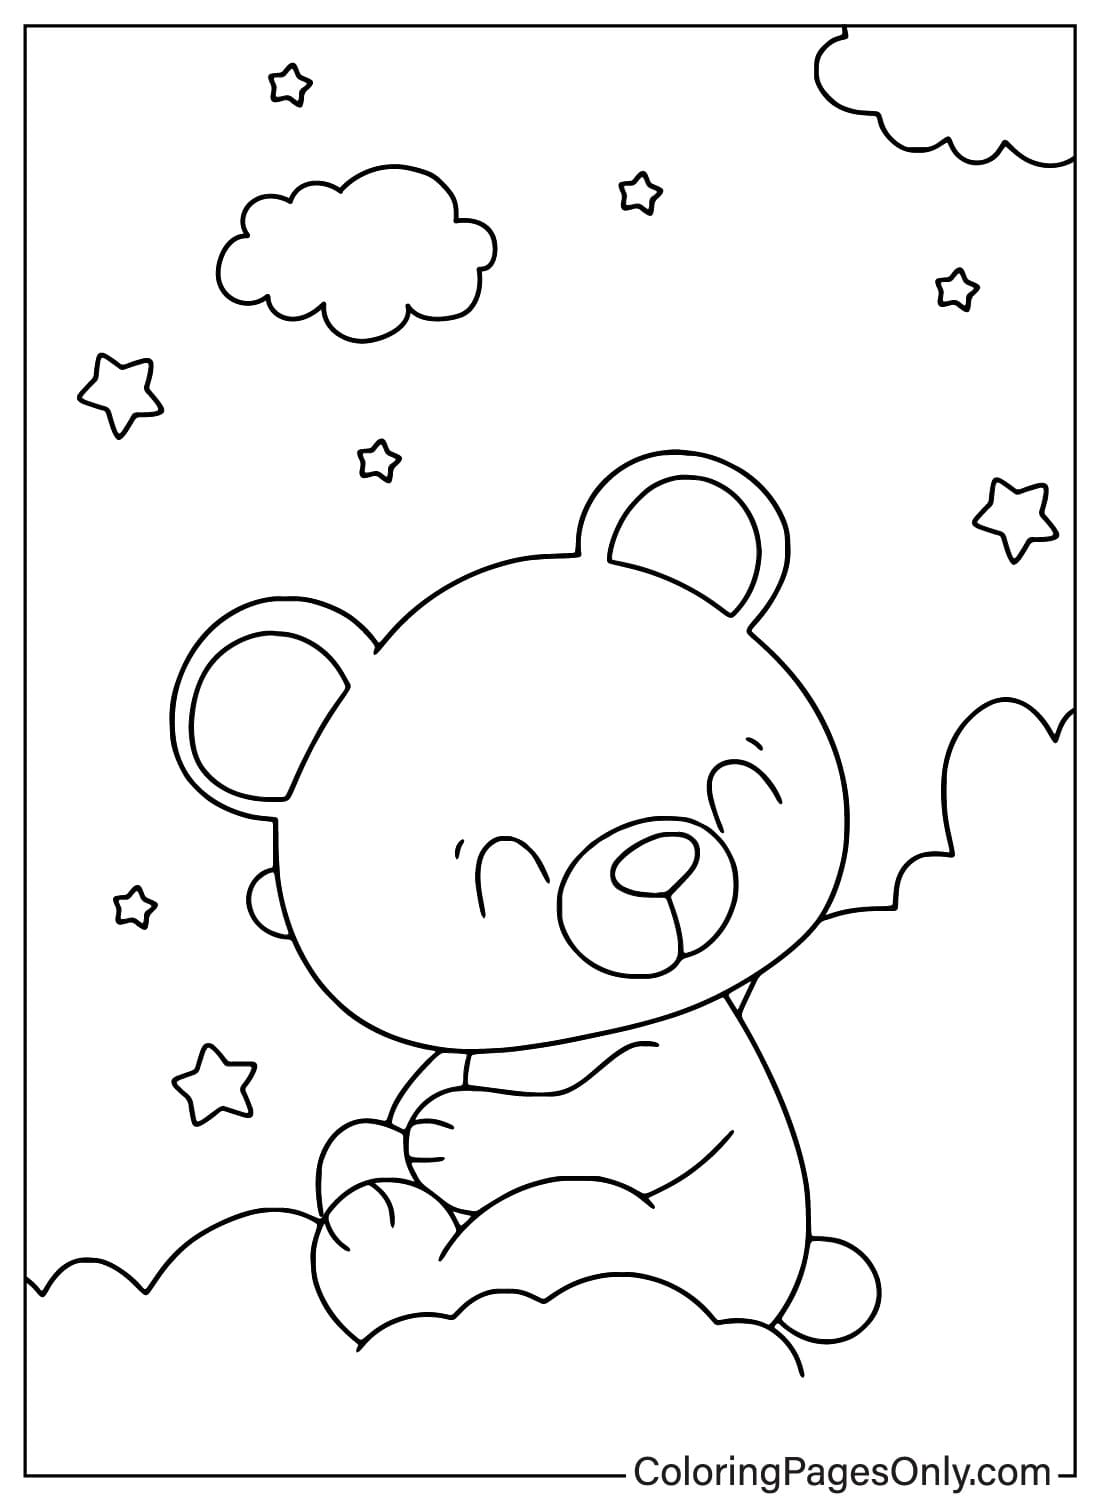 Página para colorir de ursinho de pelúcia fofo de Teddy Bear